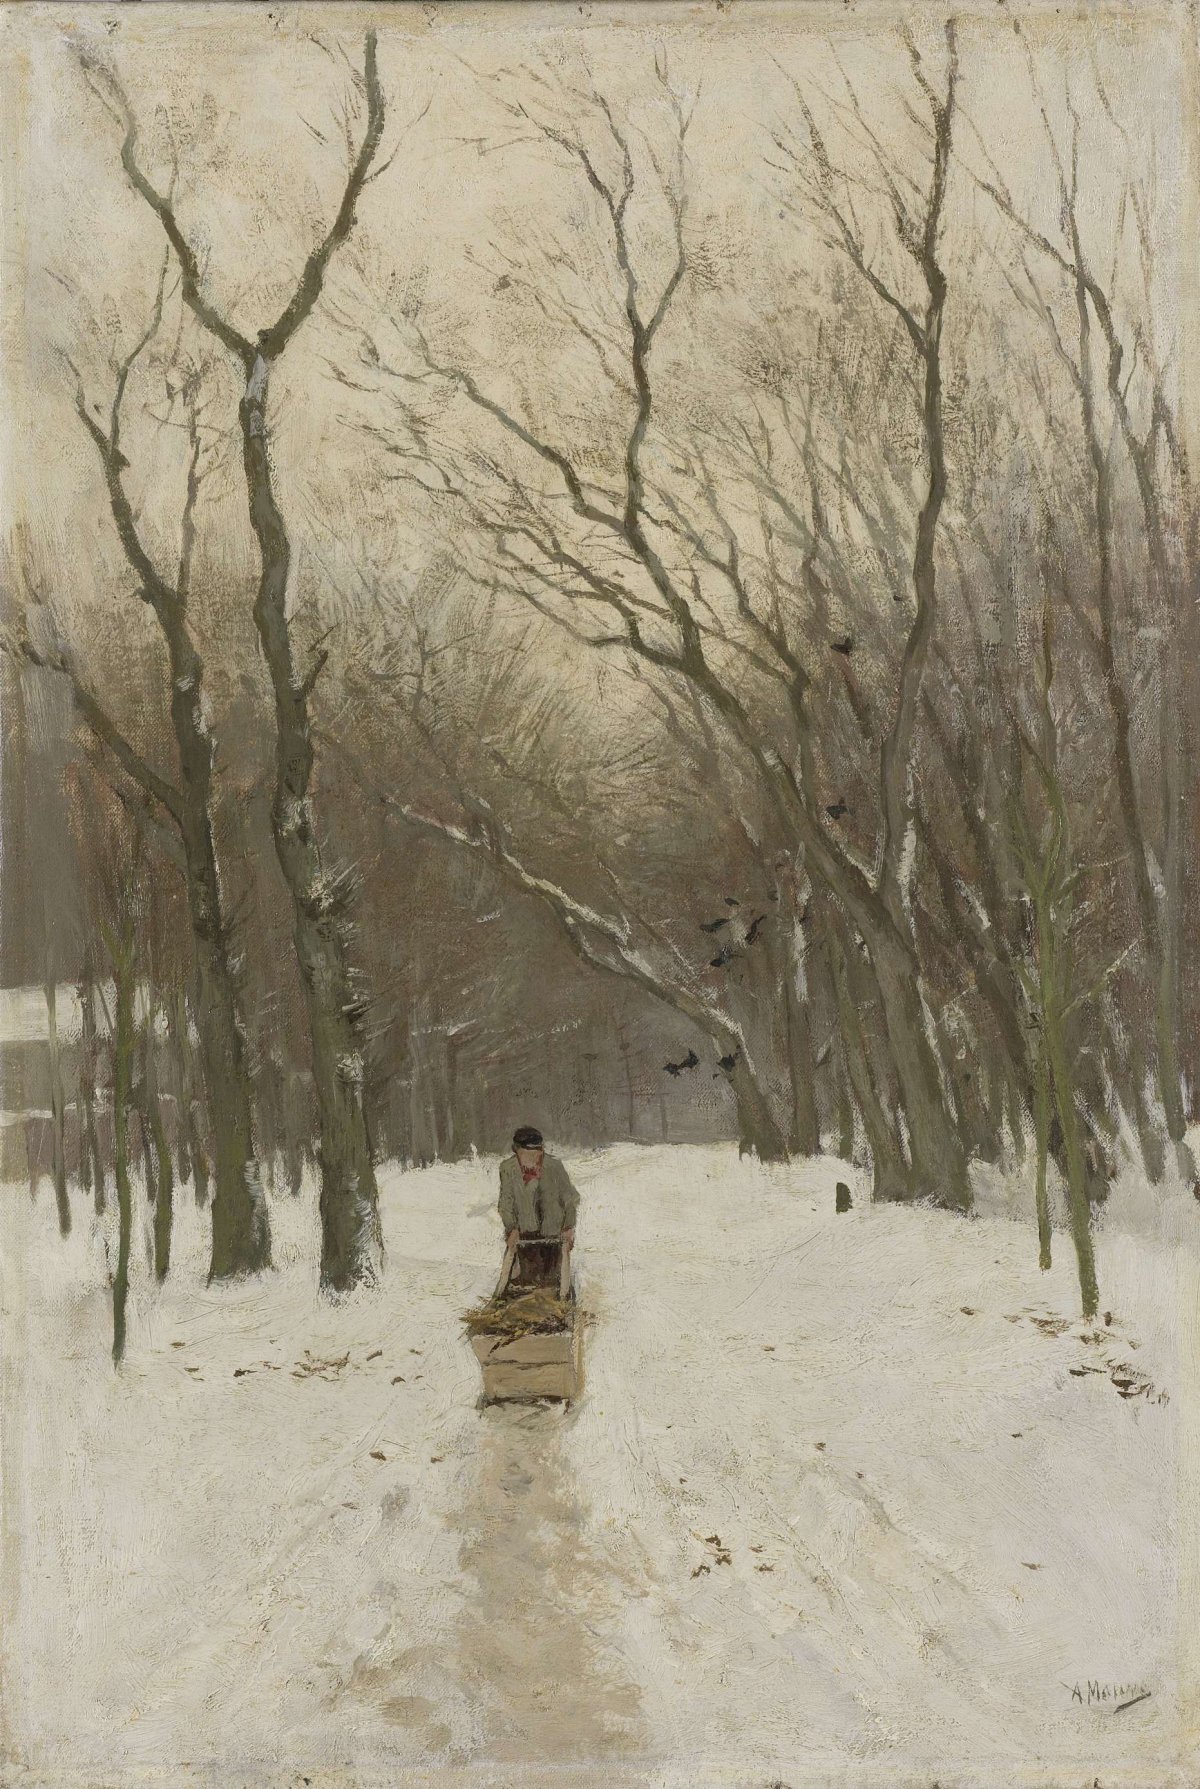 Winter in the Scheveningen Woods, Anton Mauve, 1870 - 1888